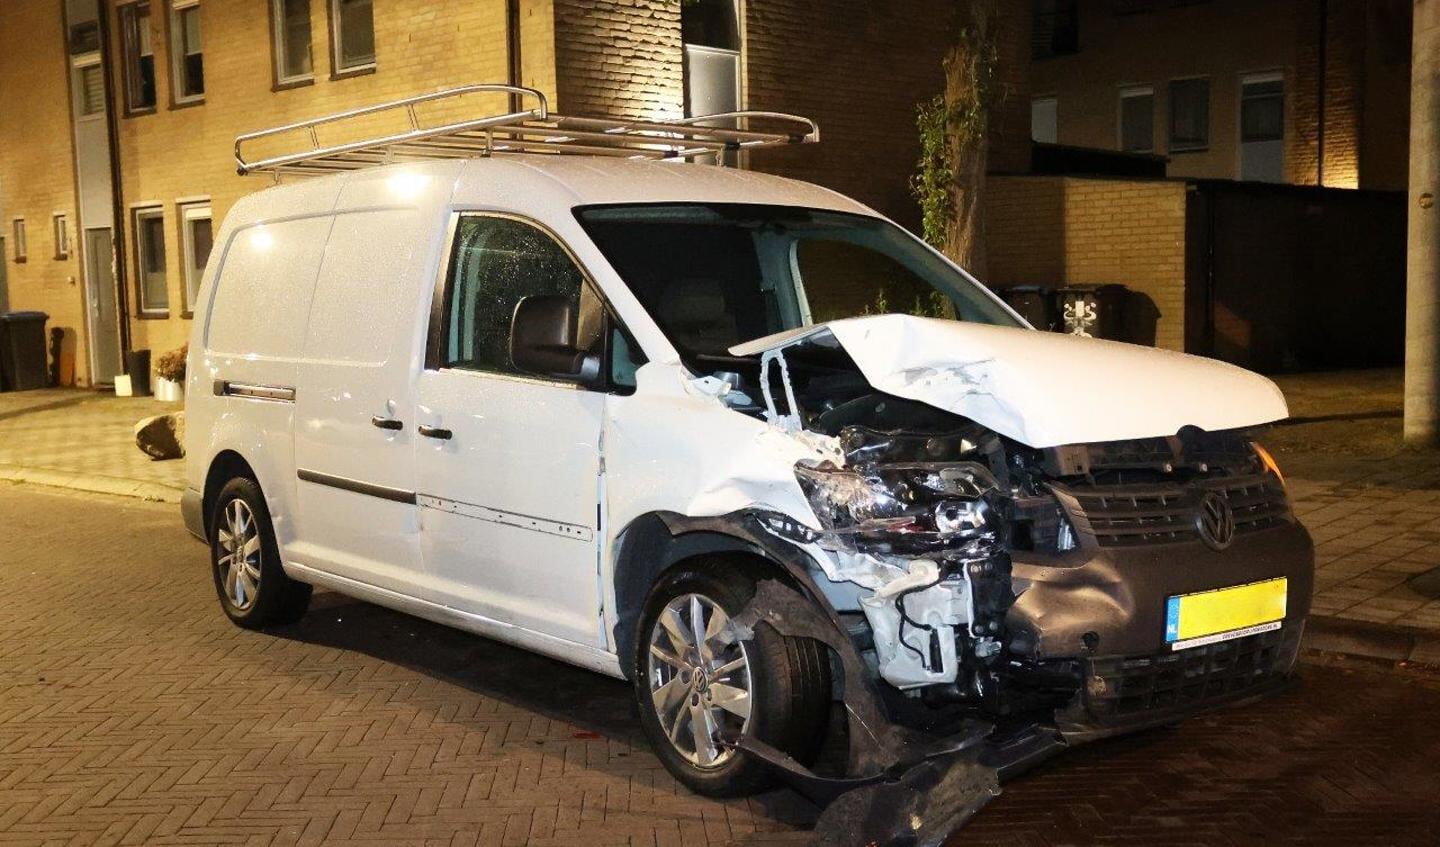 De politie - waaronder ook meerdere agenten in kogelwerende vesten - is zaterdagavond rond 21.30 uur in actie gekomen voor een incident aan het Manis Krijgsmanhof in Den Bosch waarbij twee voertuigen betrokken waren.